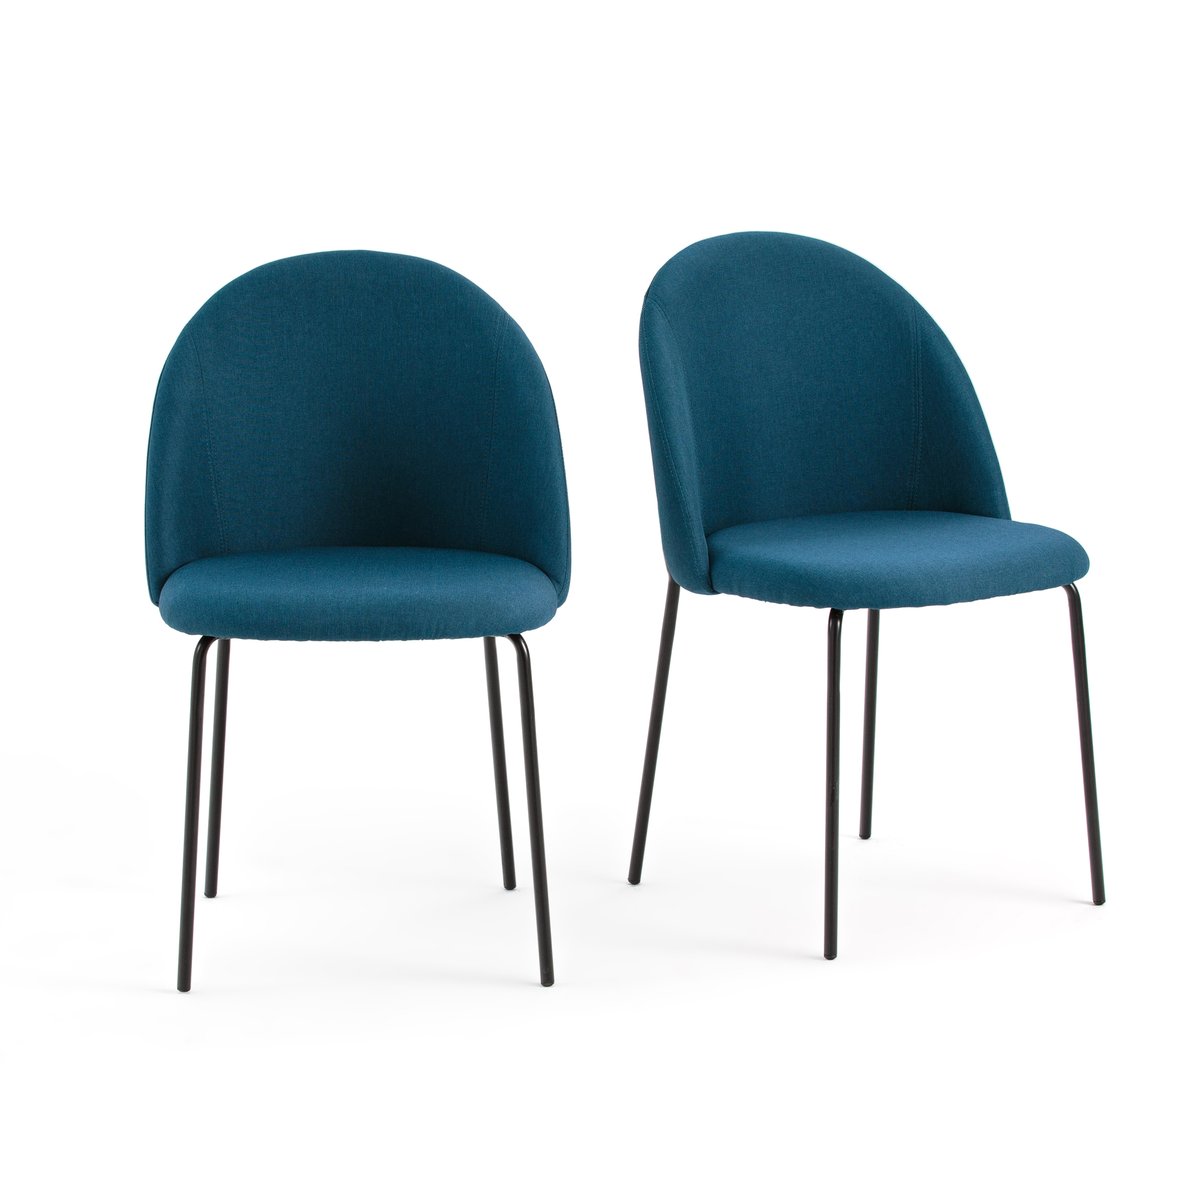 цена Комплект из 2 стульев NORDIE La Redoute единый размер синий